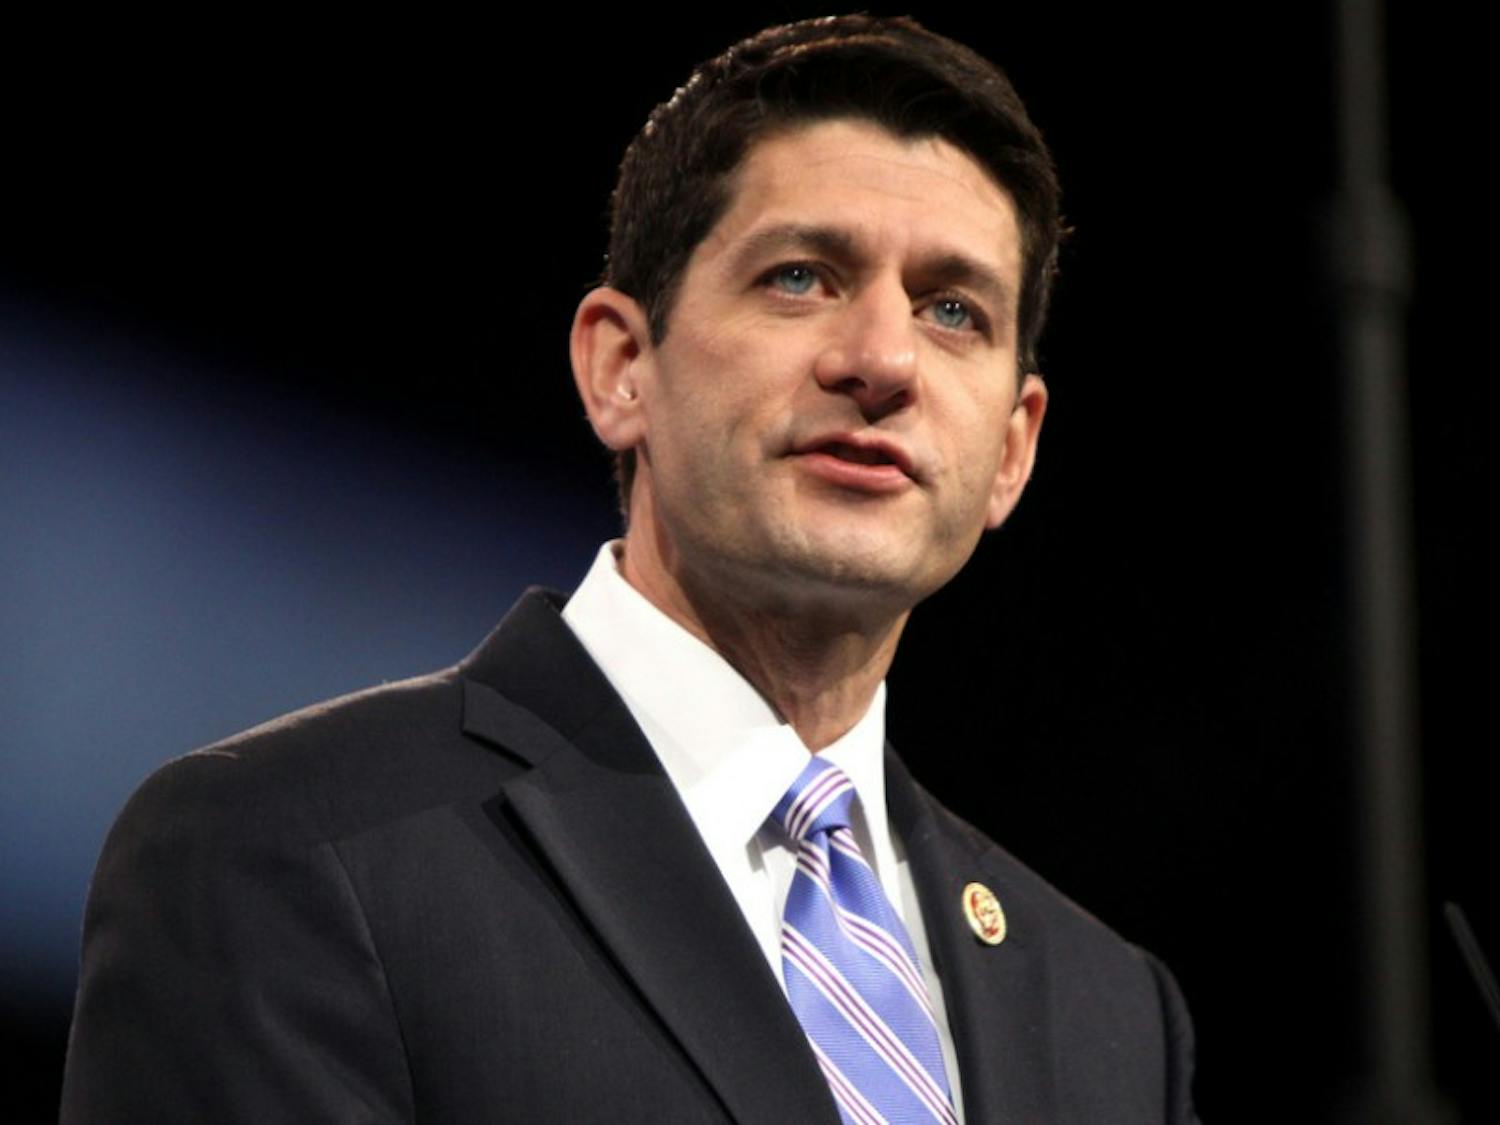 House Speaker Paul Ryan said Thursday he is endorsing Republican presidential front-runner Donald Trump.